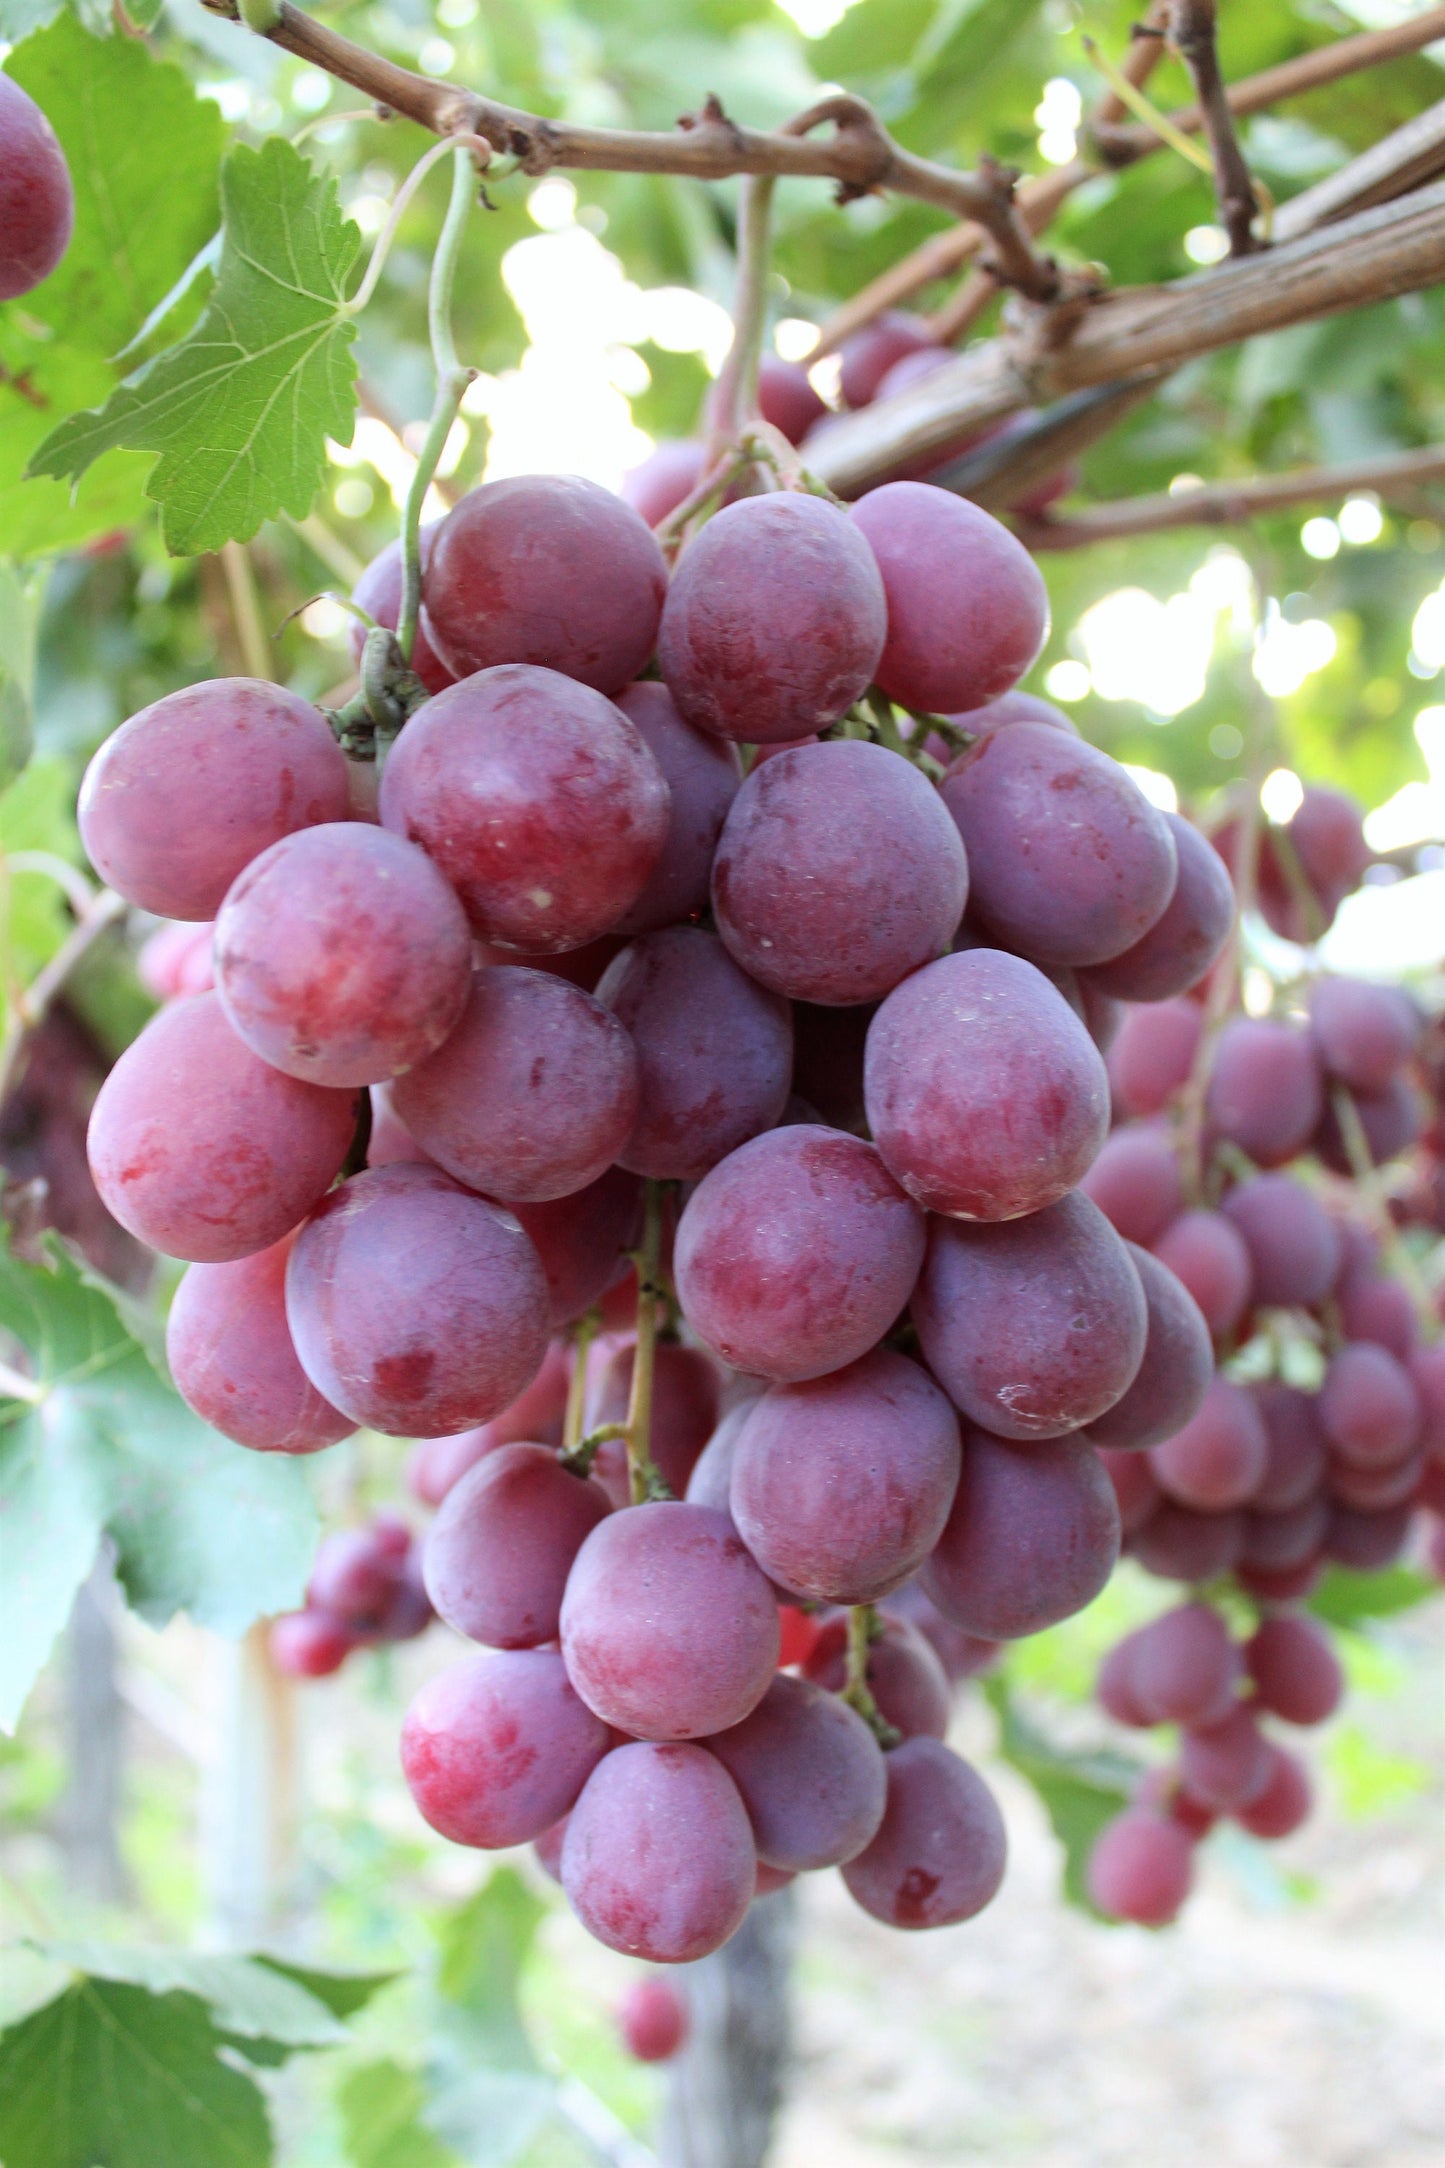 10 Giant RED GLOBE GRAPE Vitis Vinifera Fruit Vine Seeds